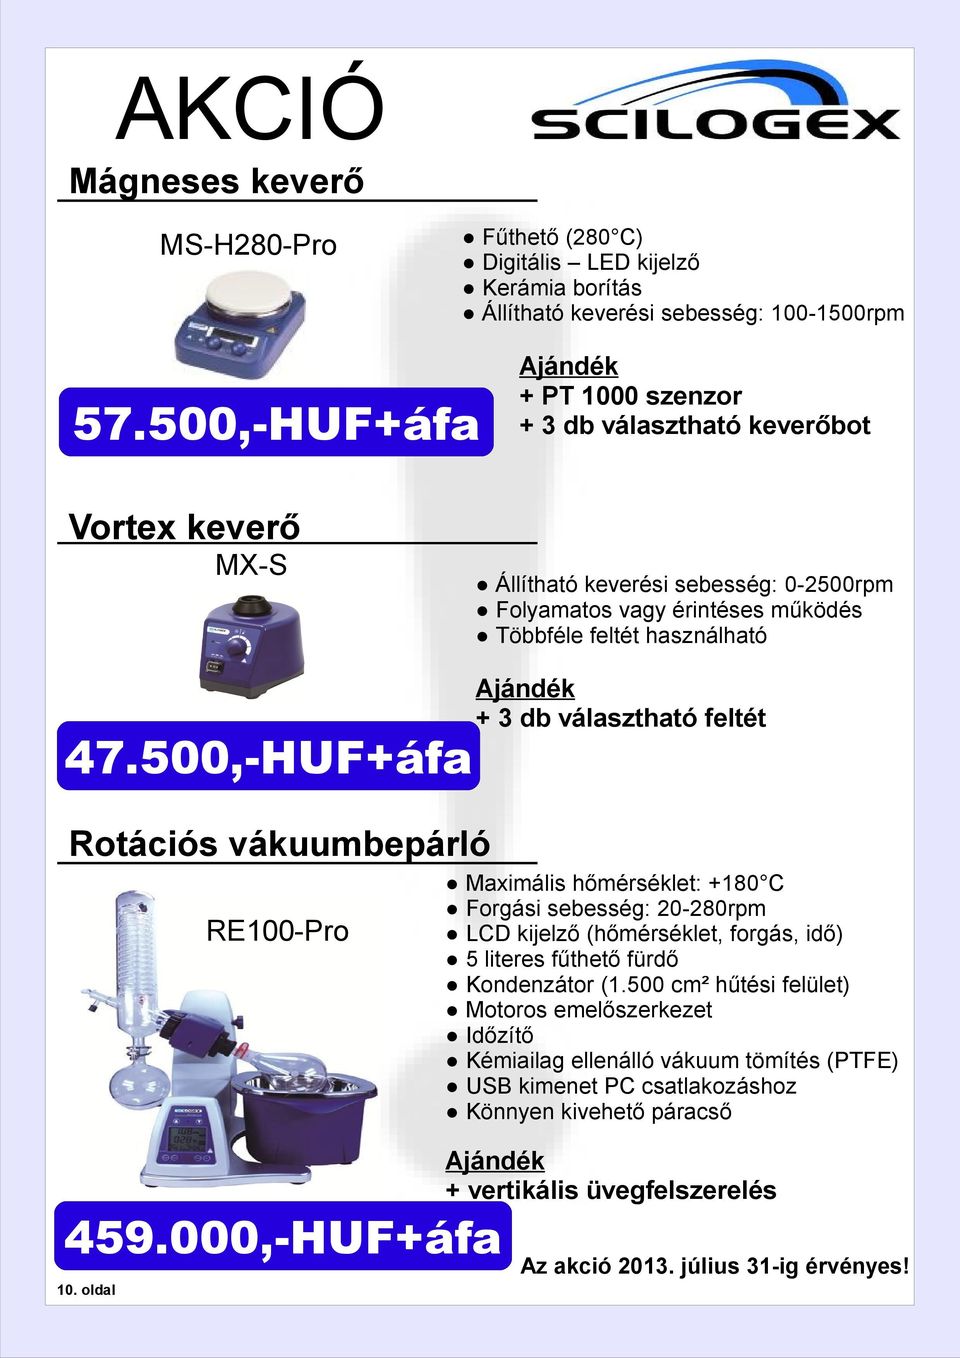 500,-HUF+áfa Ajándék + 3 db választható feltét Rotációs vákuumbepárló RE00-Pro Maximális hőmérséklet: +80 C Forgási sebesség: 20-280rpm LCD kijelző (hőmérséklet, forgás, idő) 5 literes fűthető